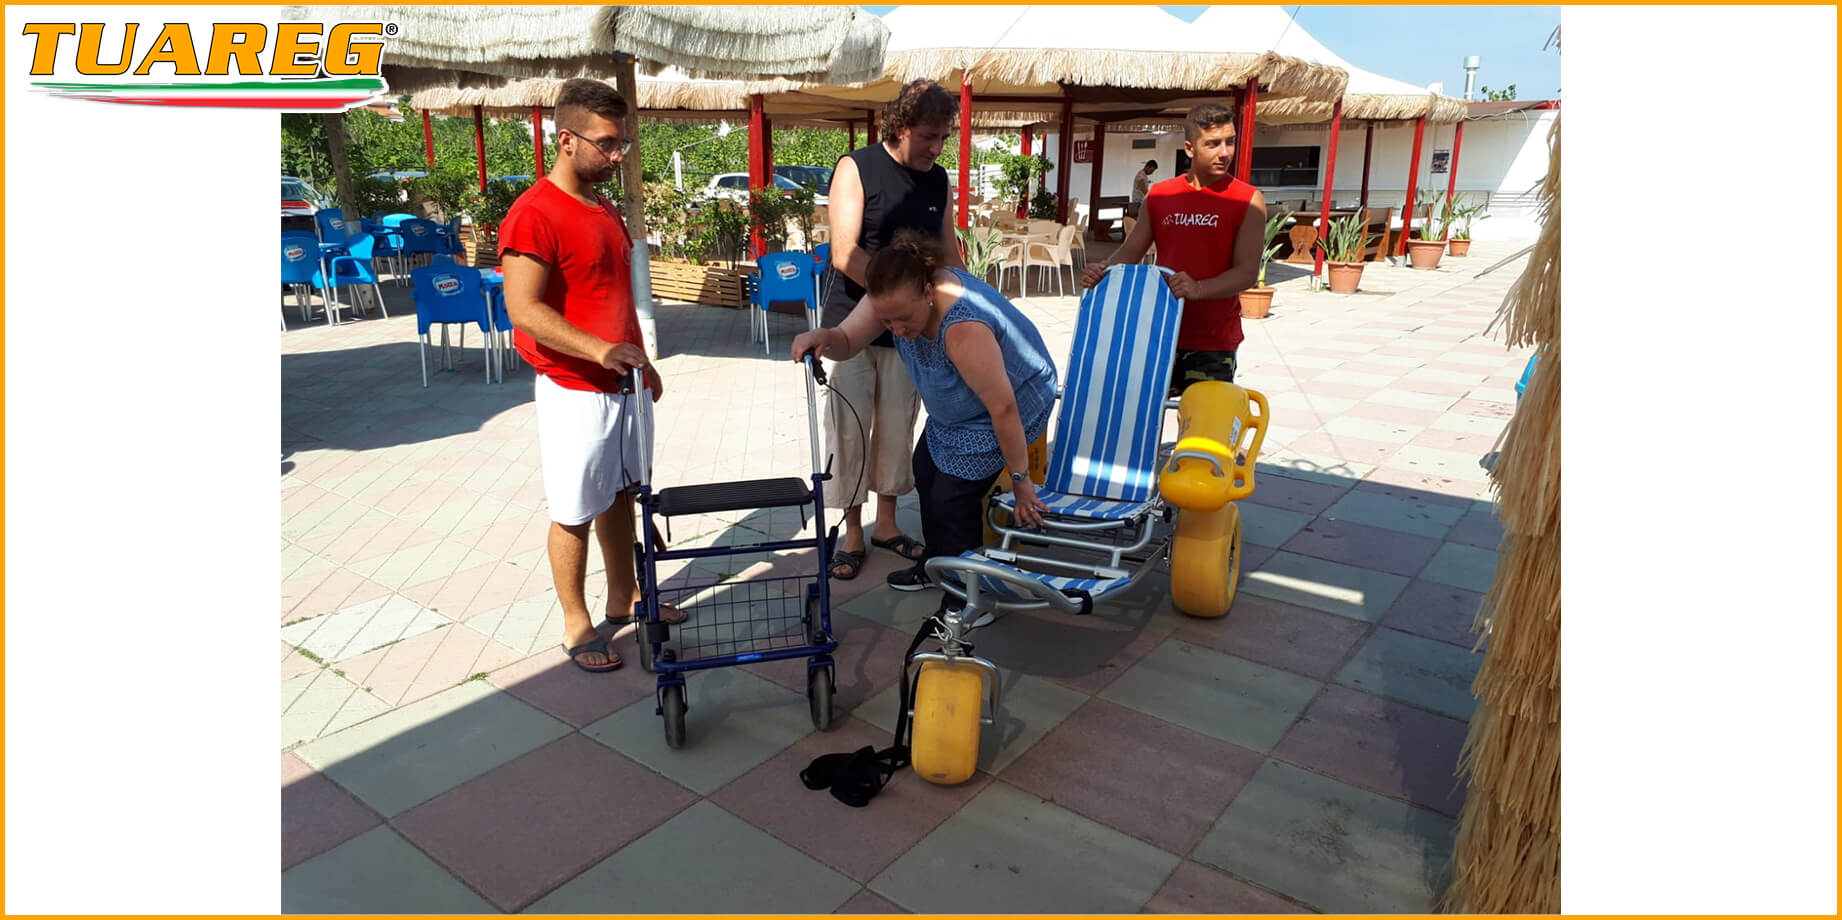 Chaise de plage Float pour Personnes à Mobilité Réduite - Tuareg Access - Produit/Accessoire pour l'Accessibilité à la Plage